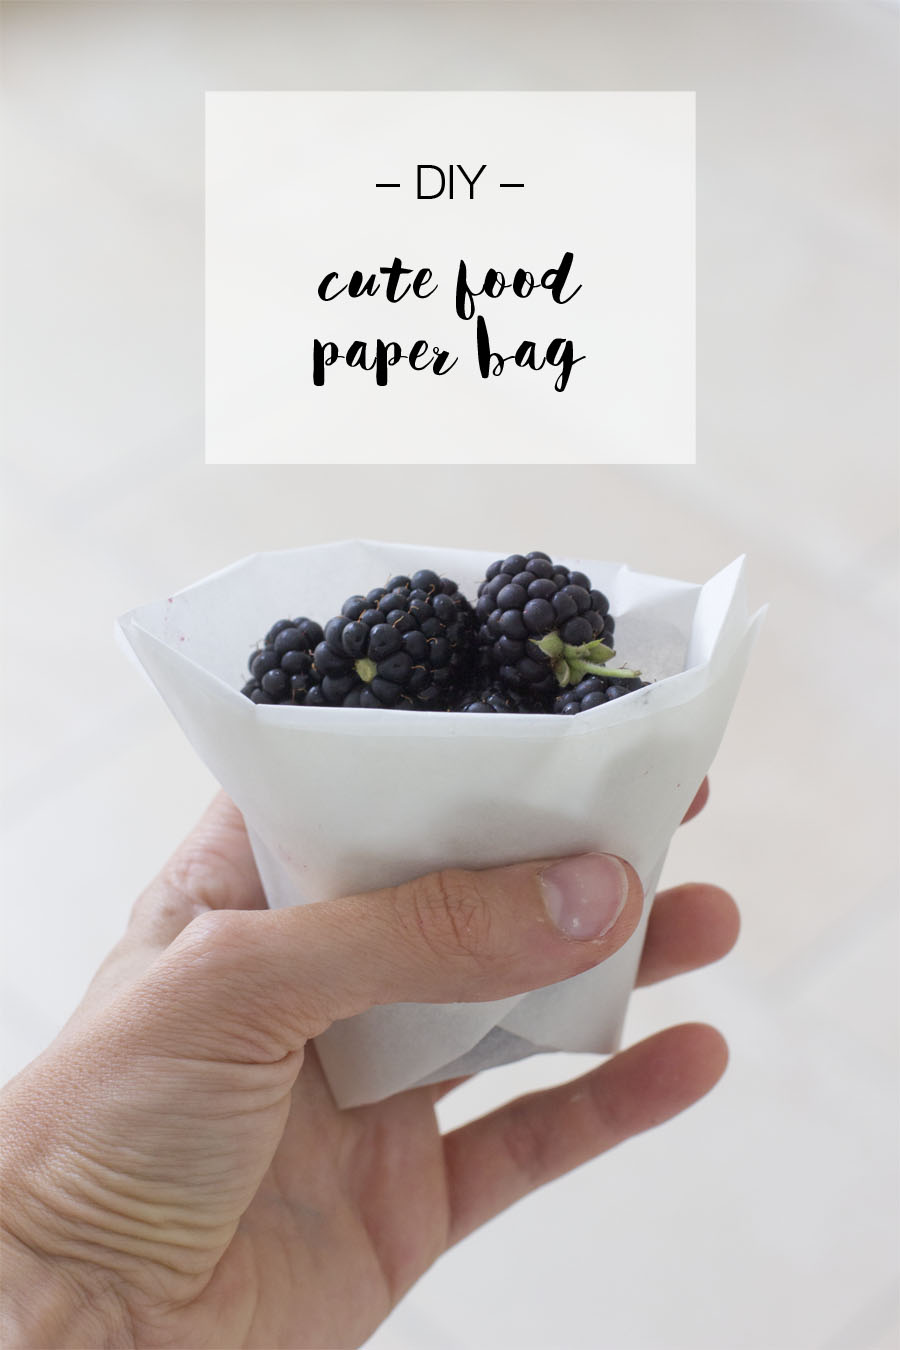 DIY food paper bag | LOOK WHAT I MADE ...